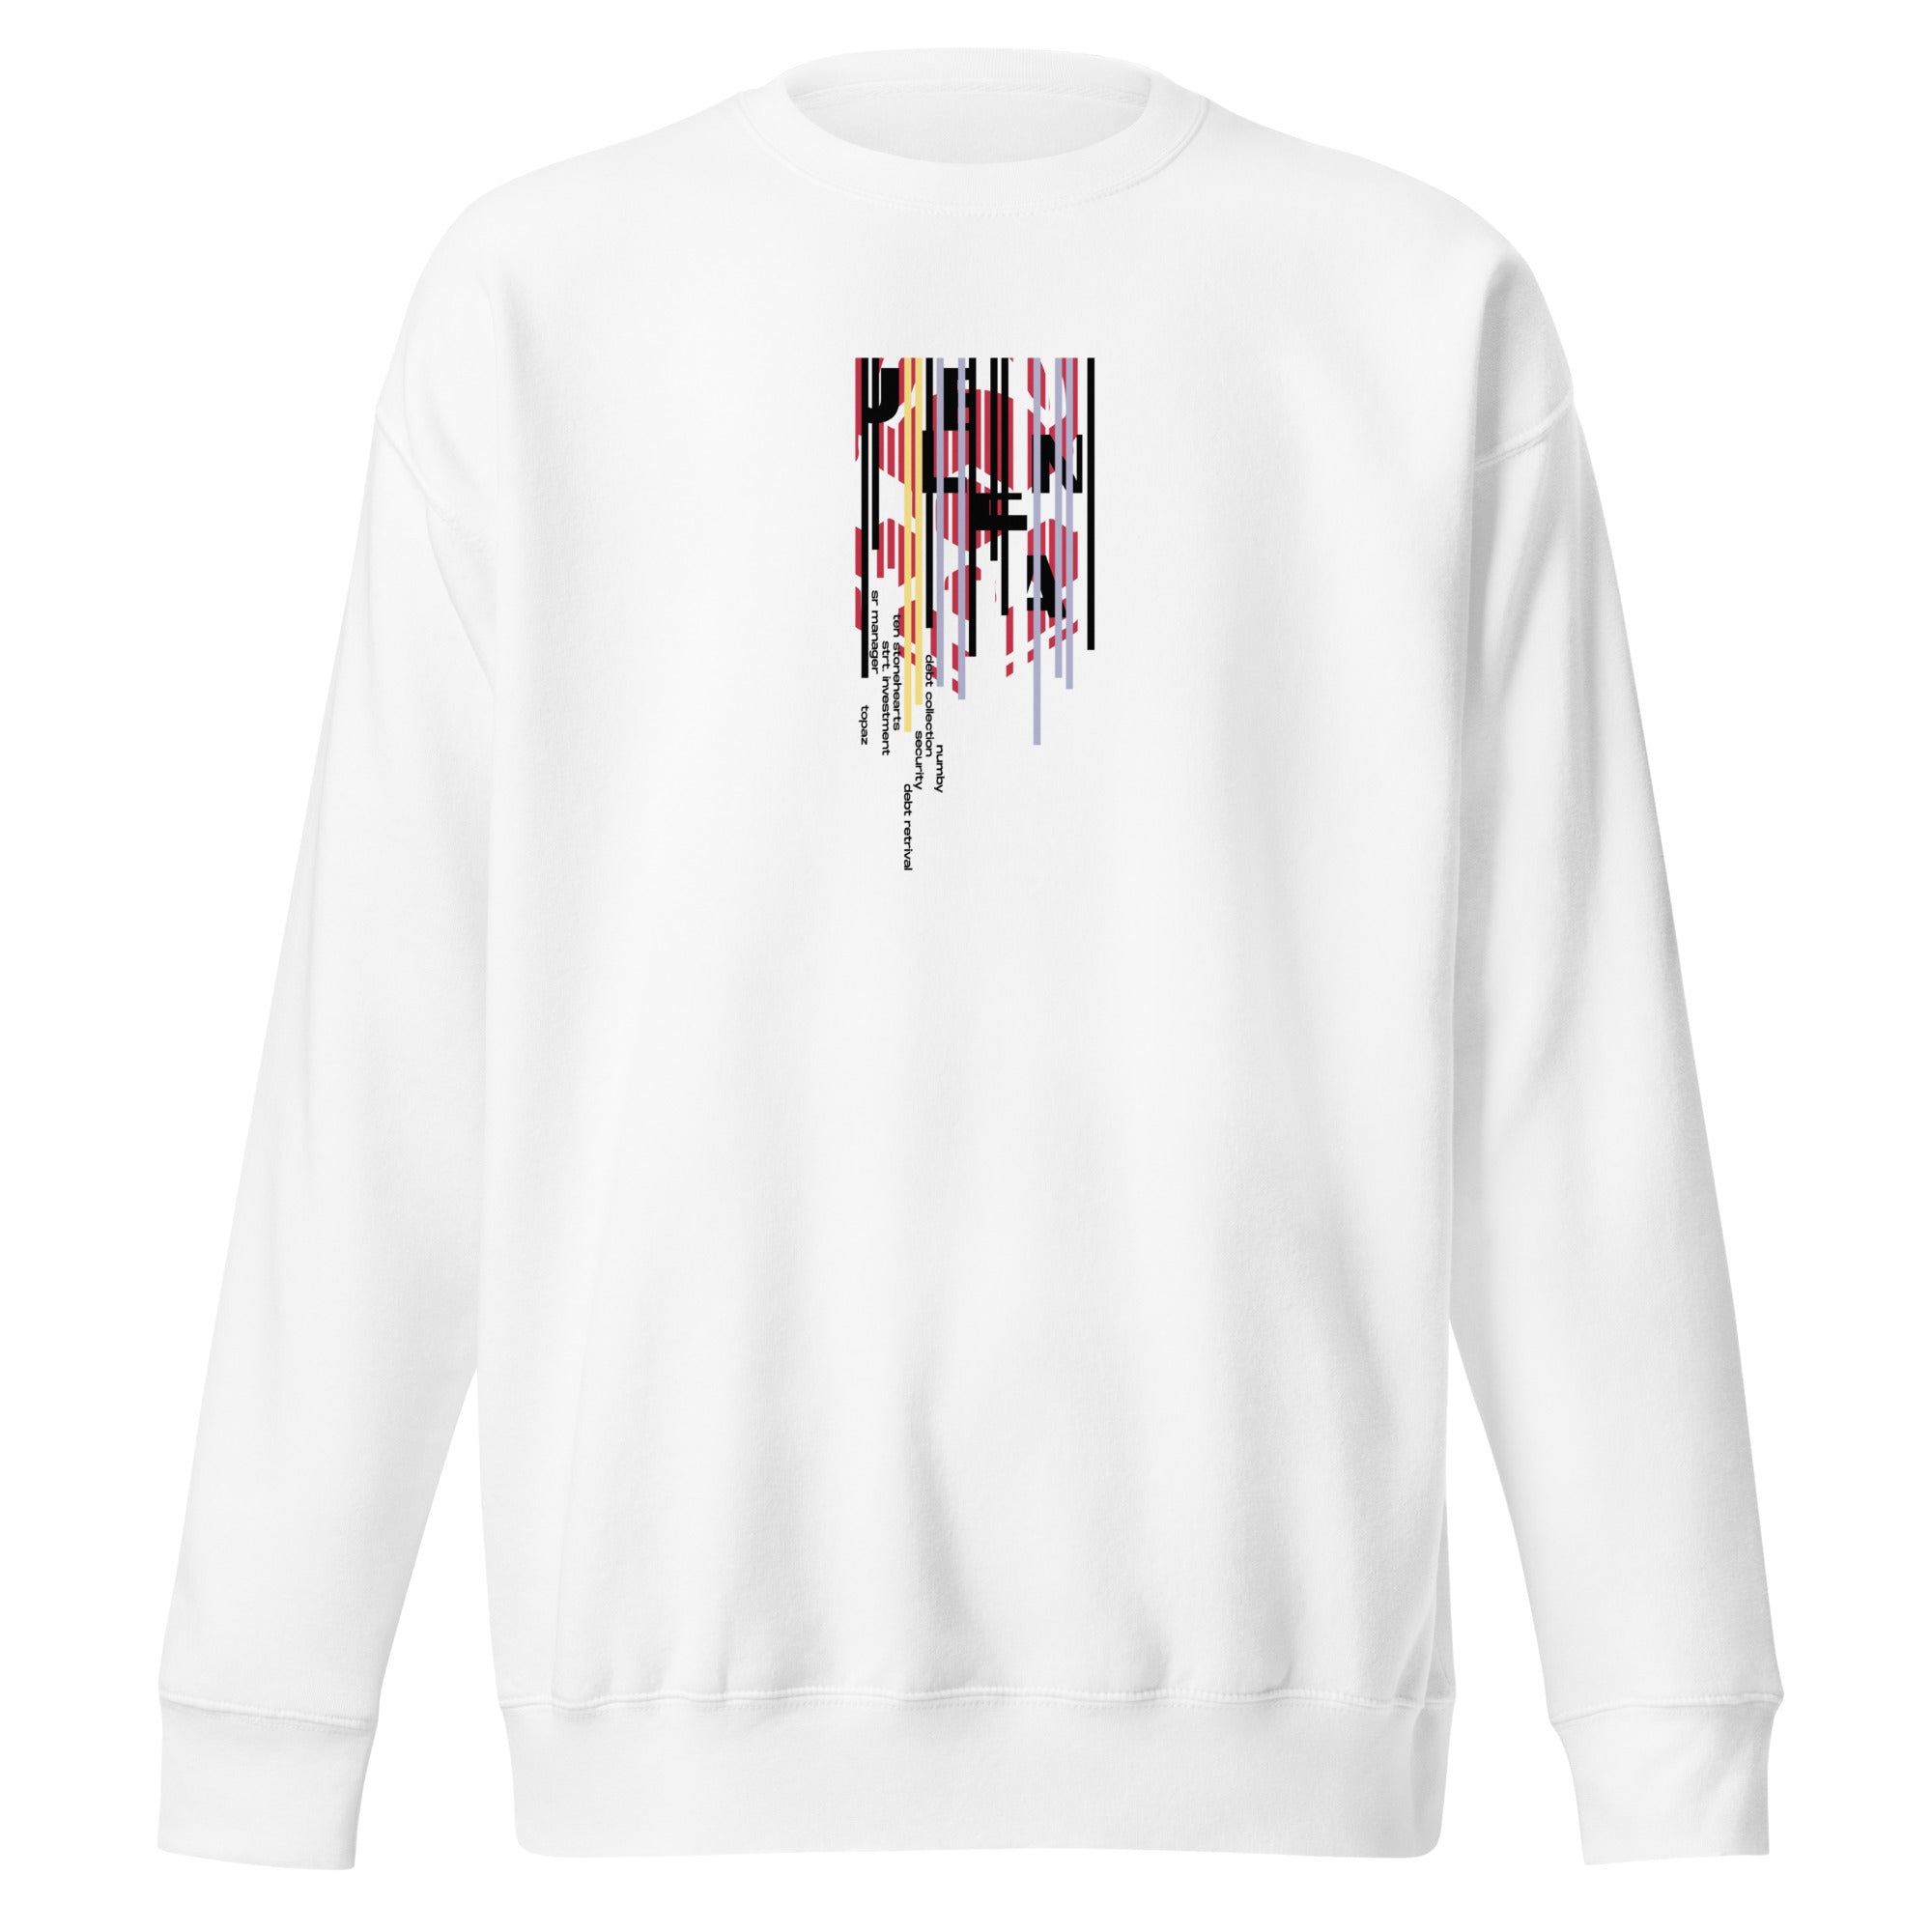 SPECIAL DEBTS • sweatshirt - Jackler - anime-inspired streetwear - anime clothing